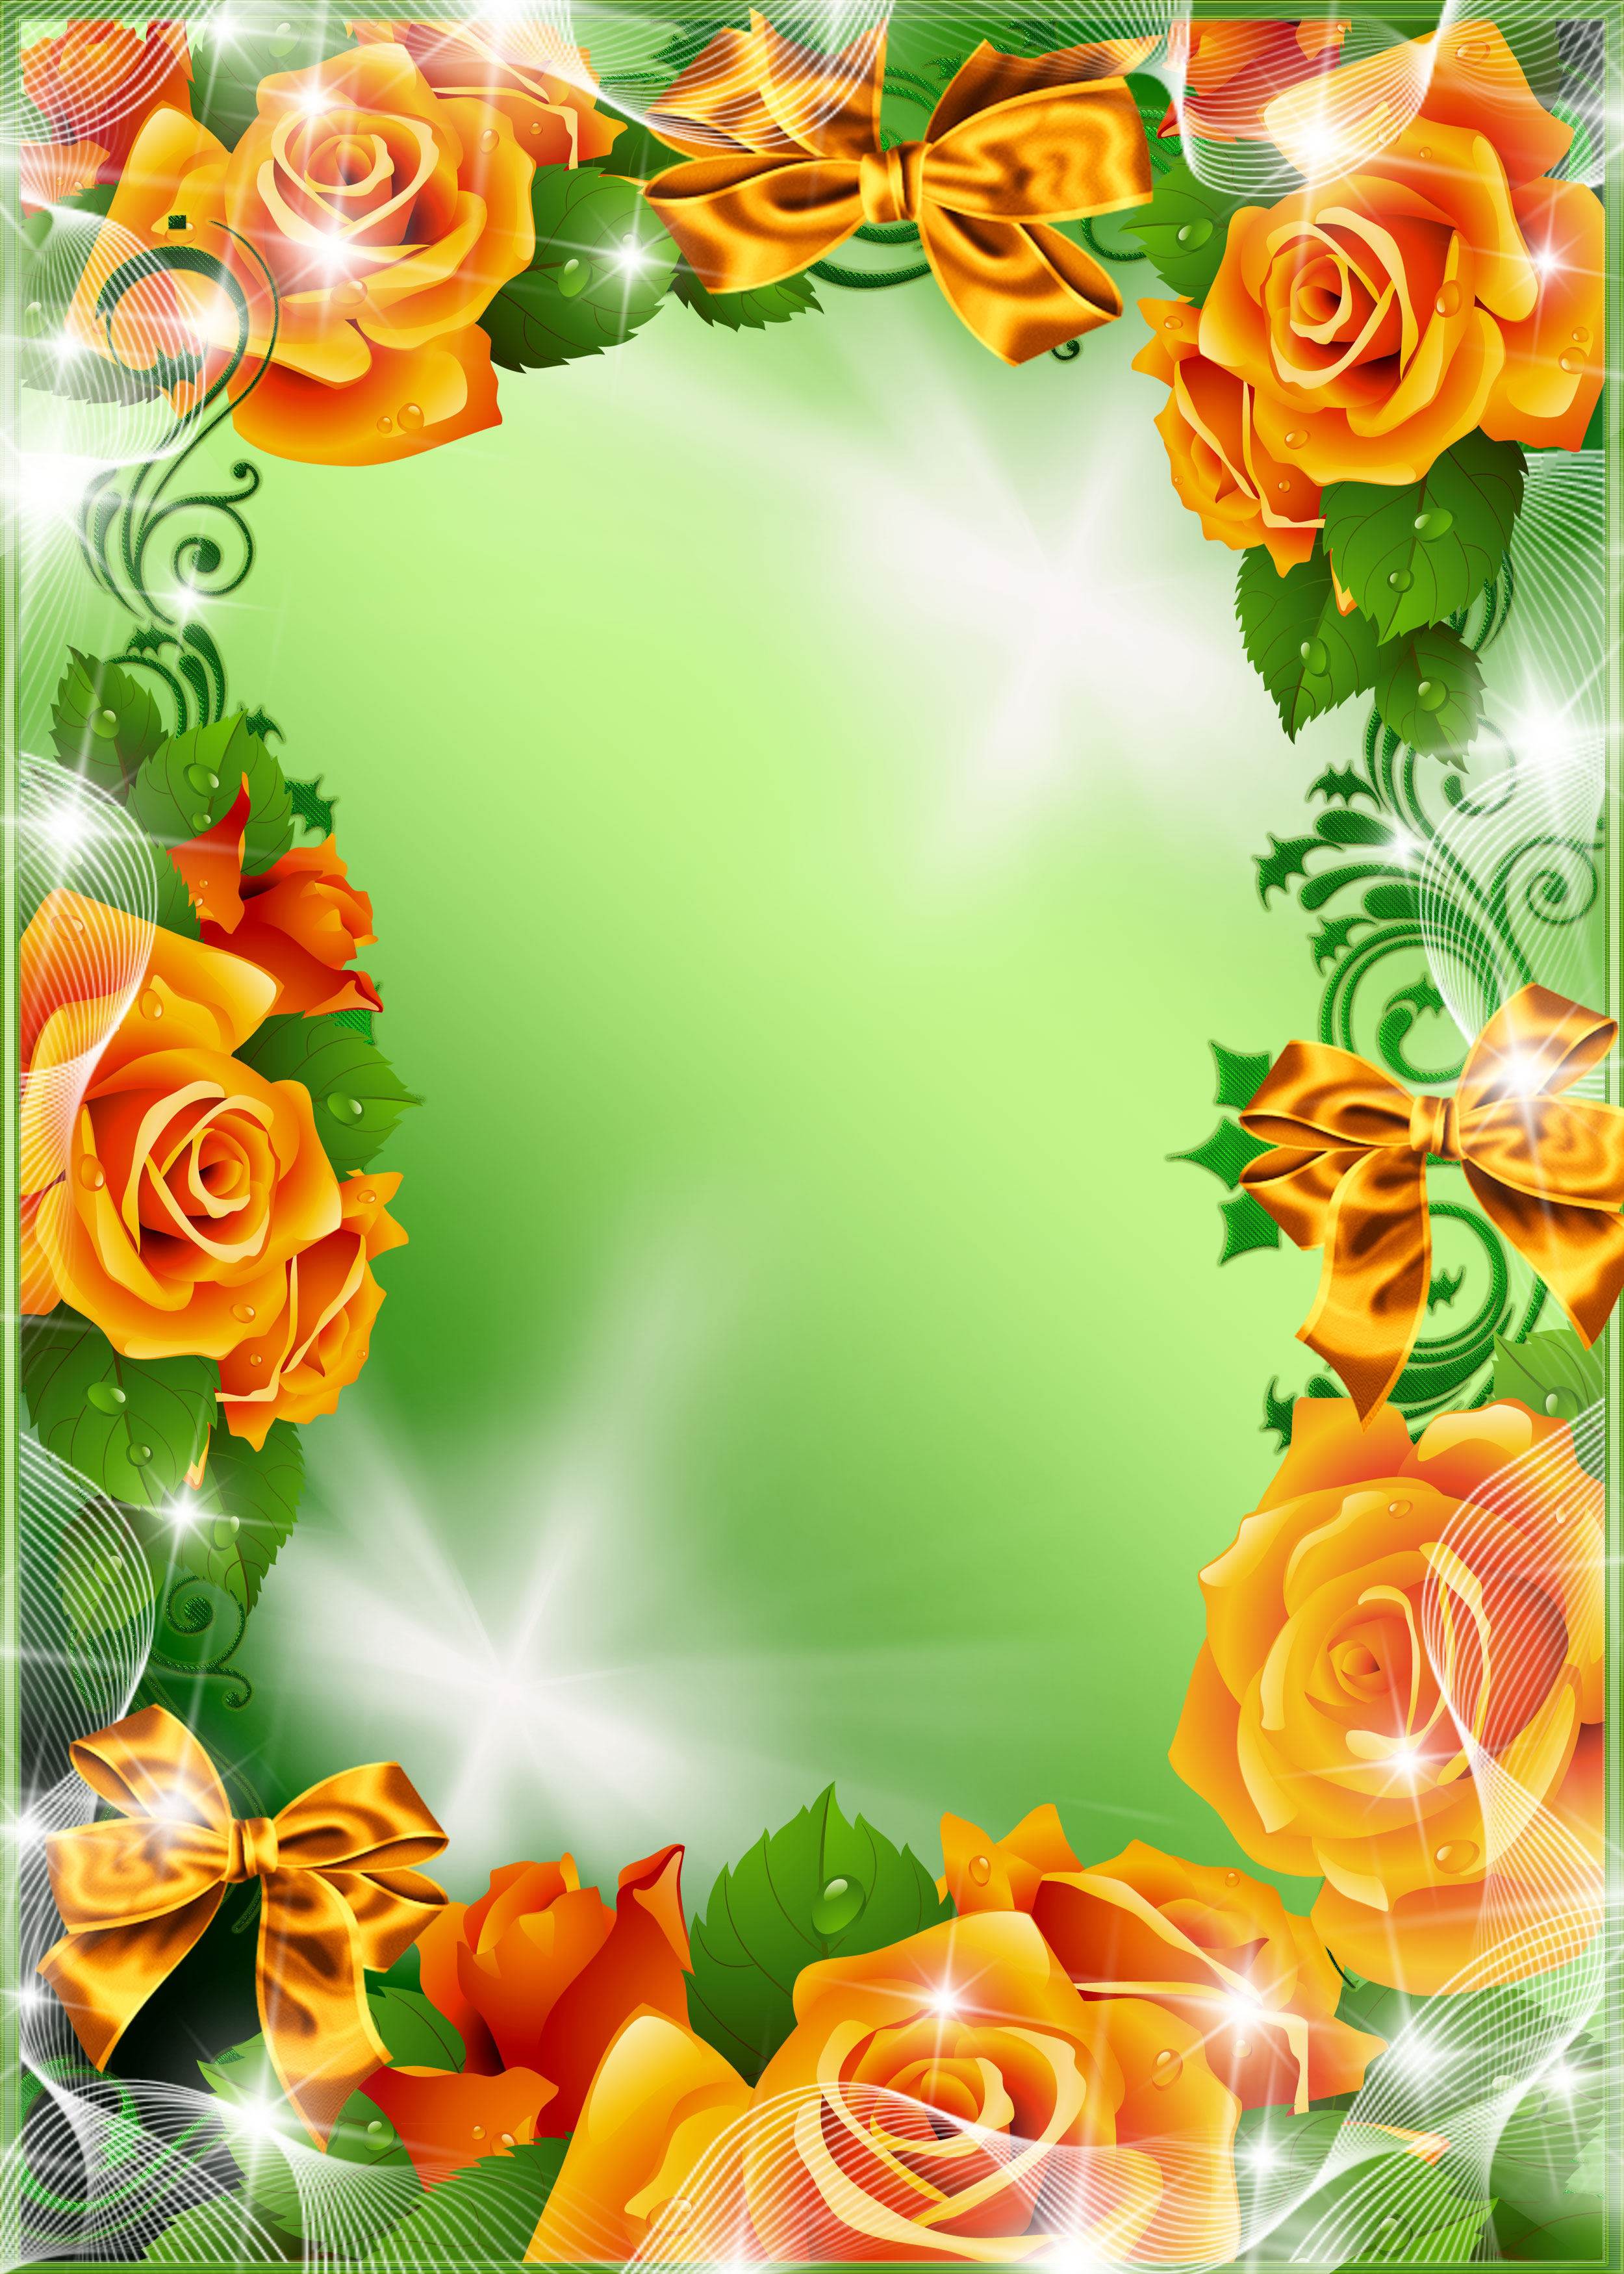 オレンジ色の花のイラスト フリー素材 壁紙 背景no 218 黄バラ 光彩 緑